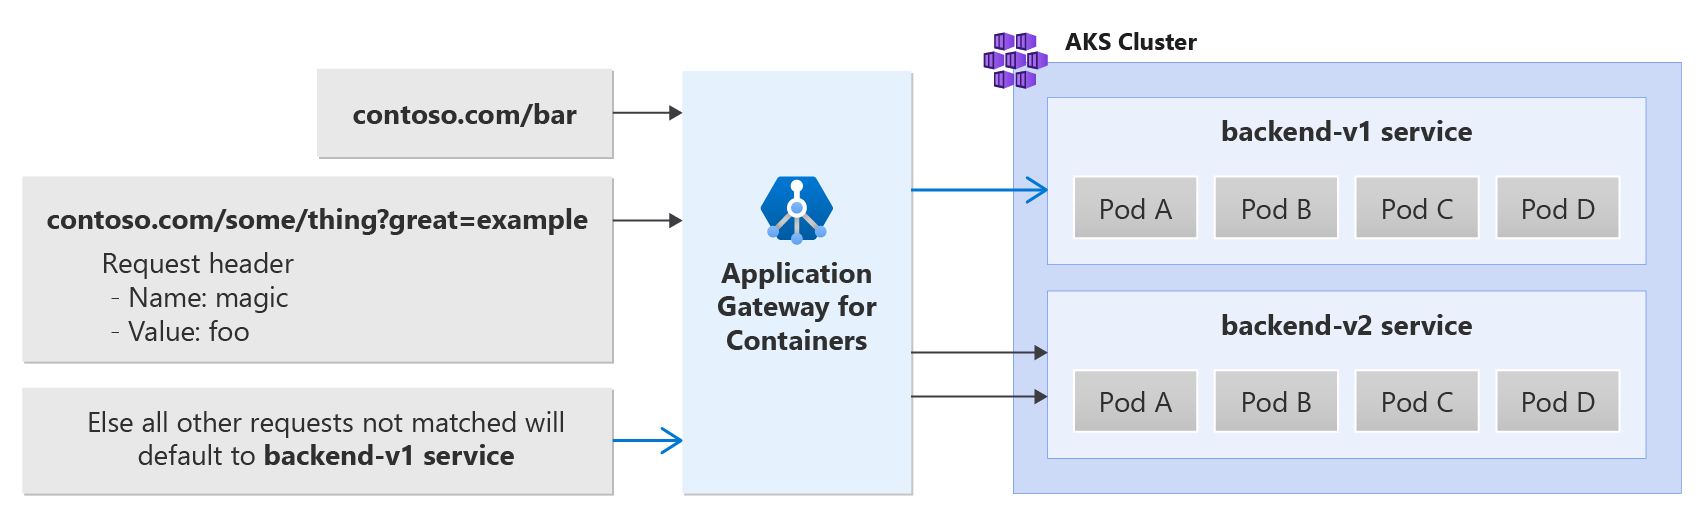 En bild som visar sökväg, sidhuvud och frågesträngsroutning med Application Gateway för containrar.